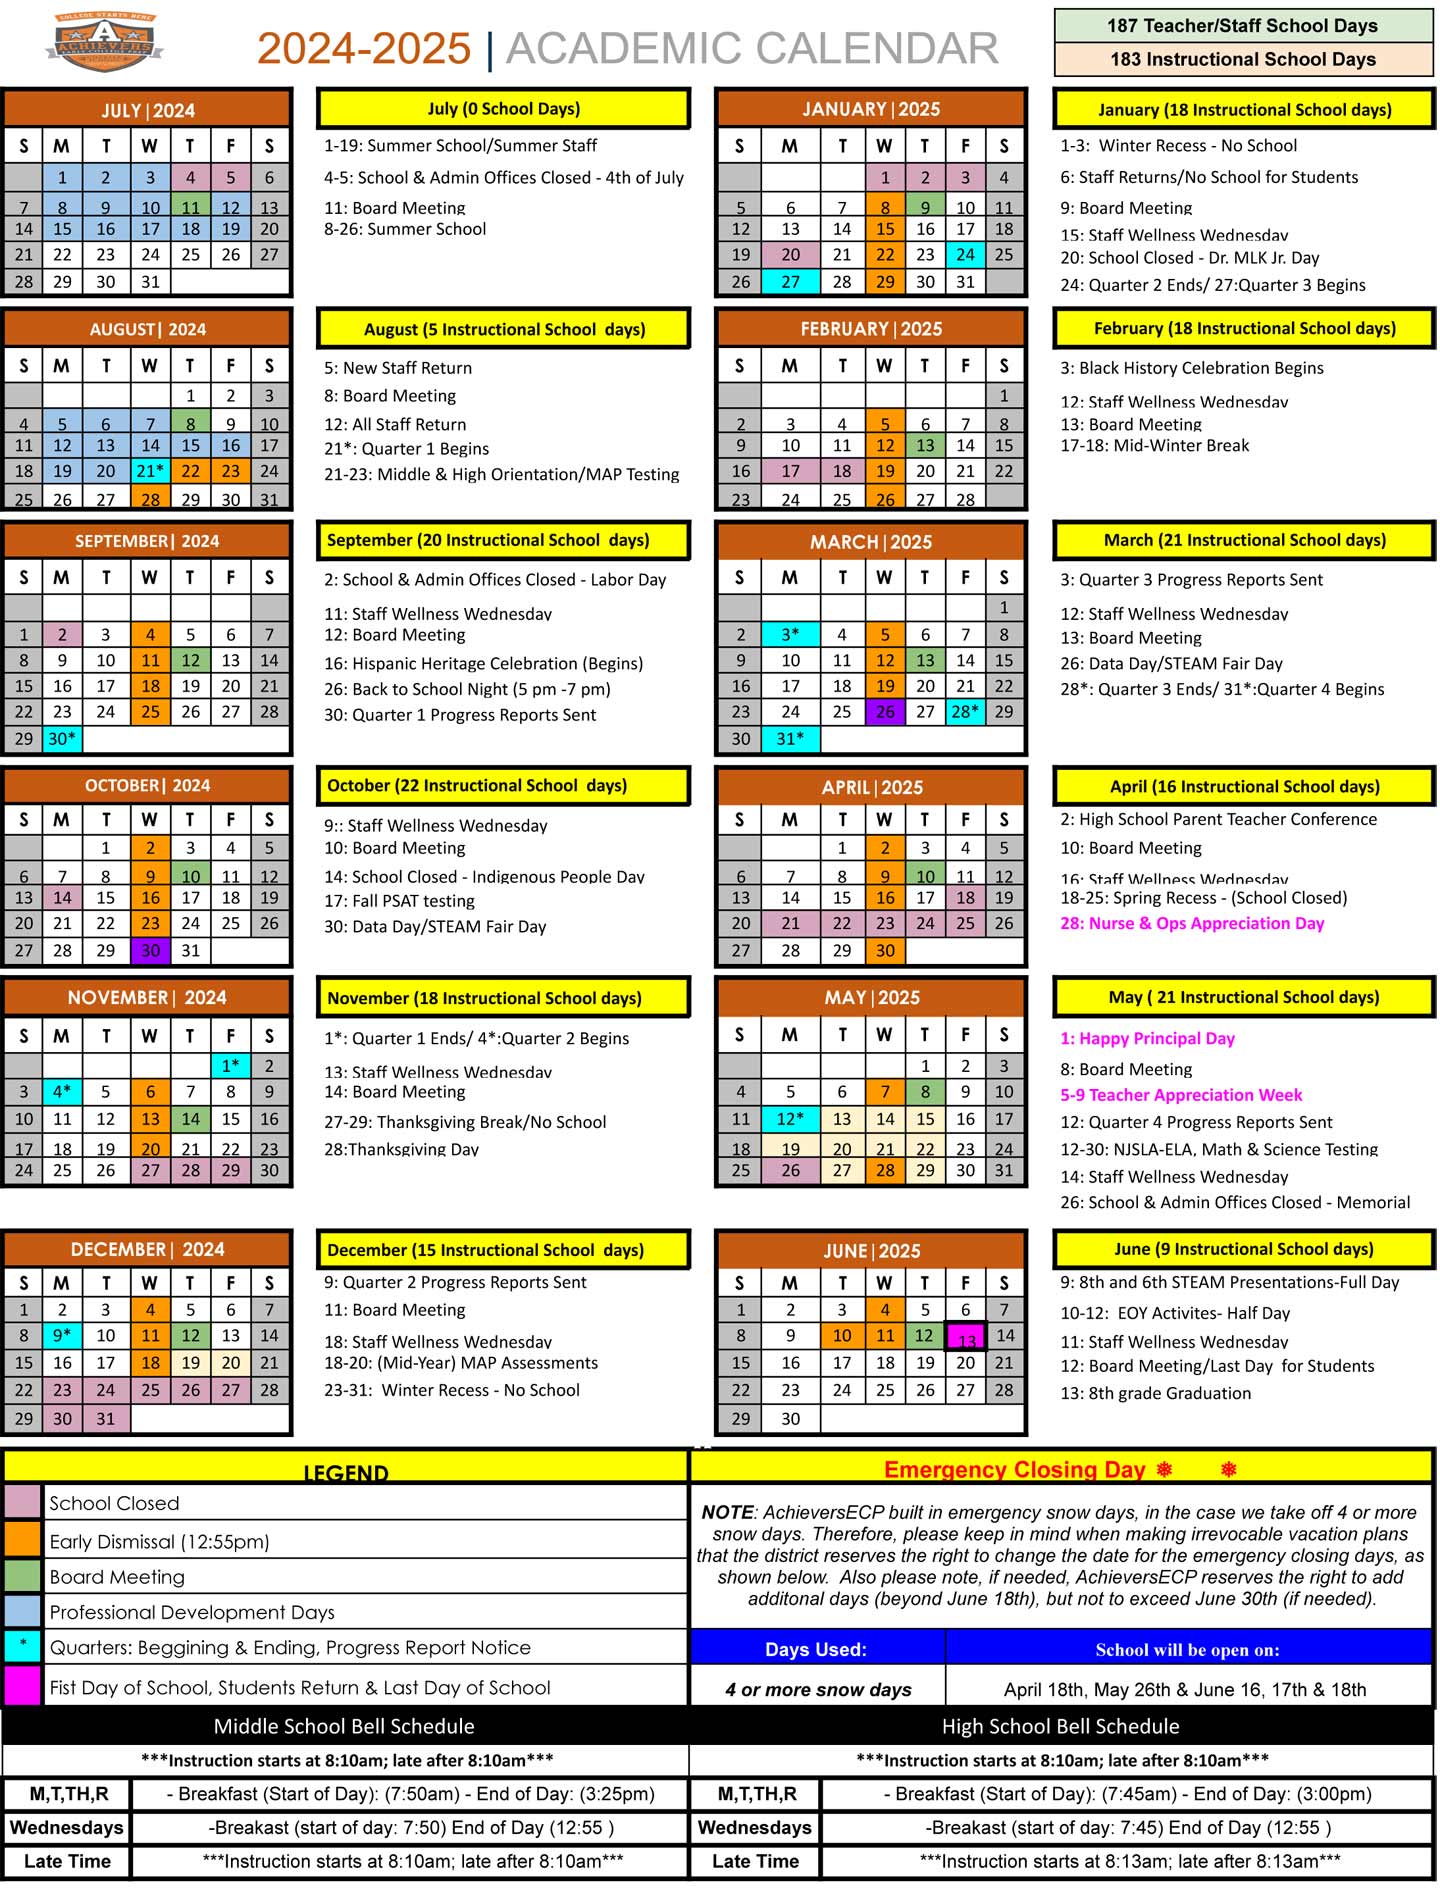 AECP School Calendar - 2024-2025